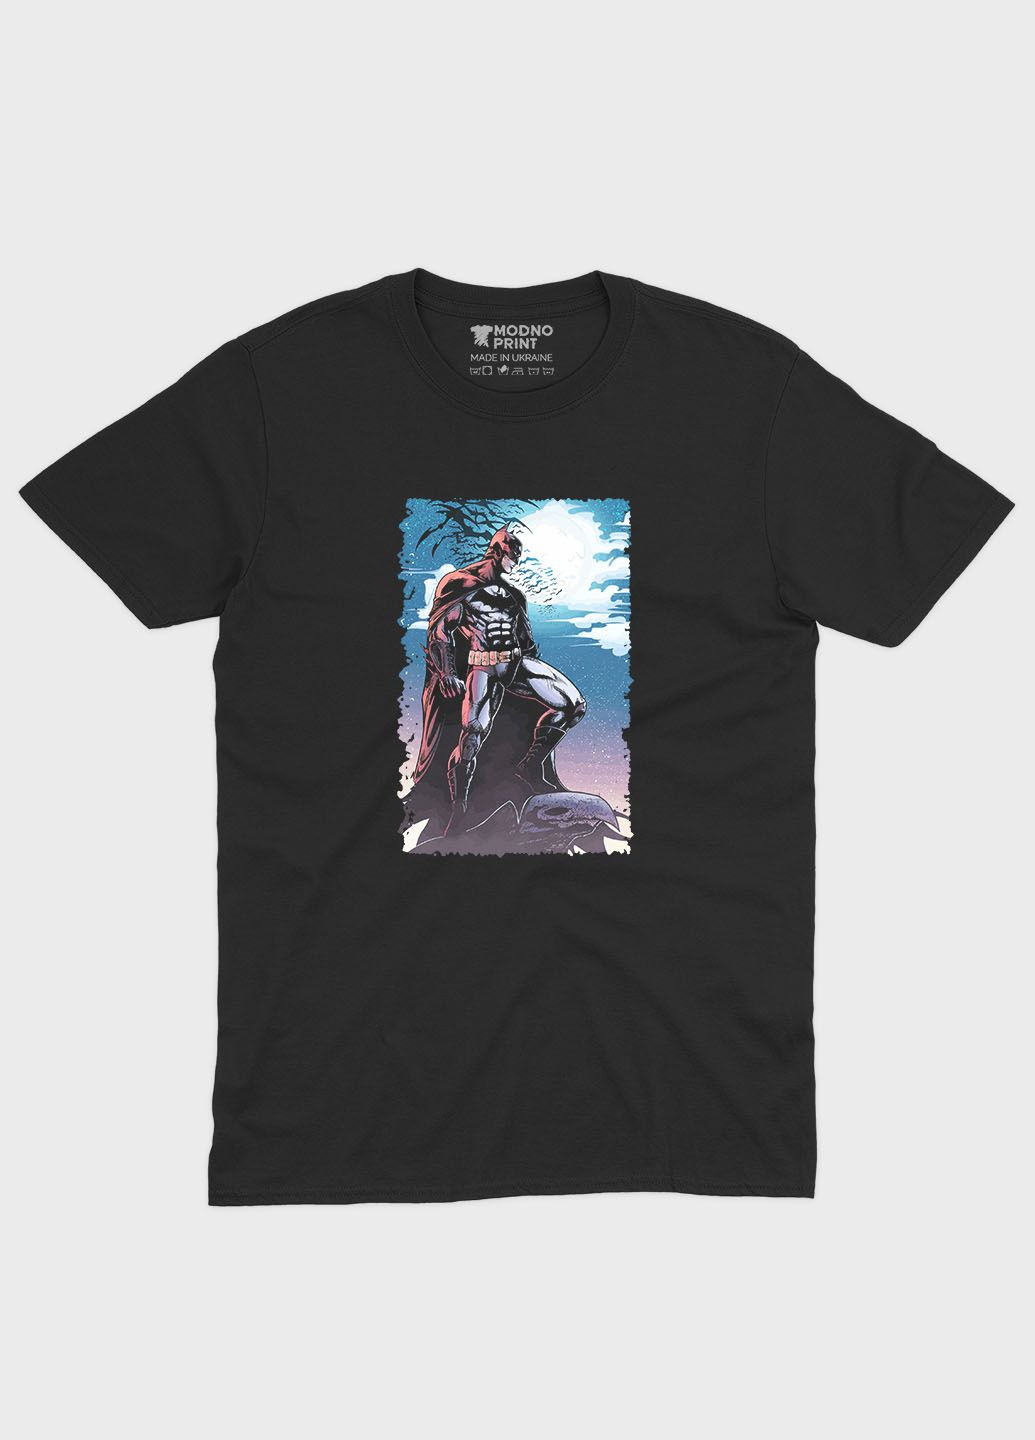 Чорна демісезонна футболка для хлопчика з принтом супергероя - бетмен (ts001-1-bl-006-003-002-b) Modno